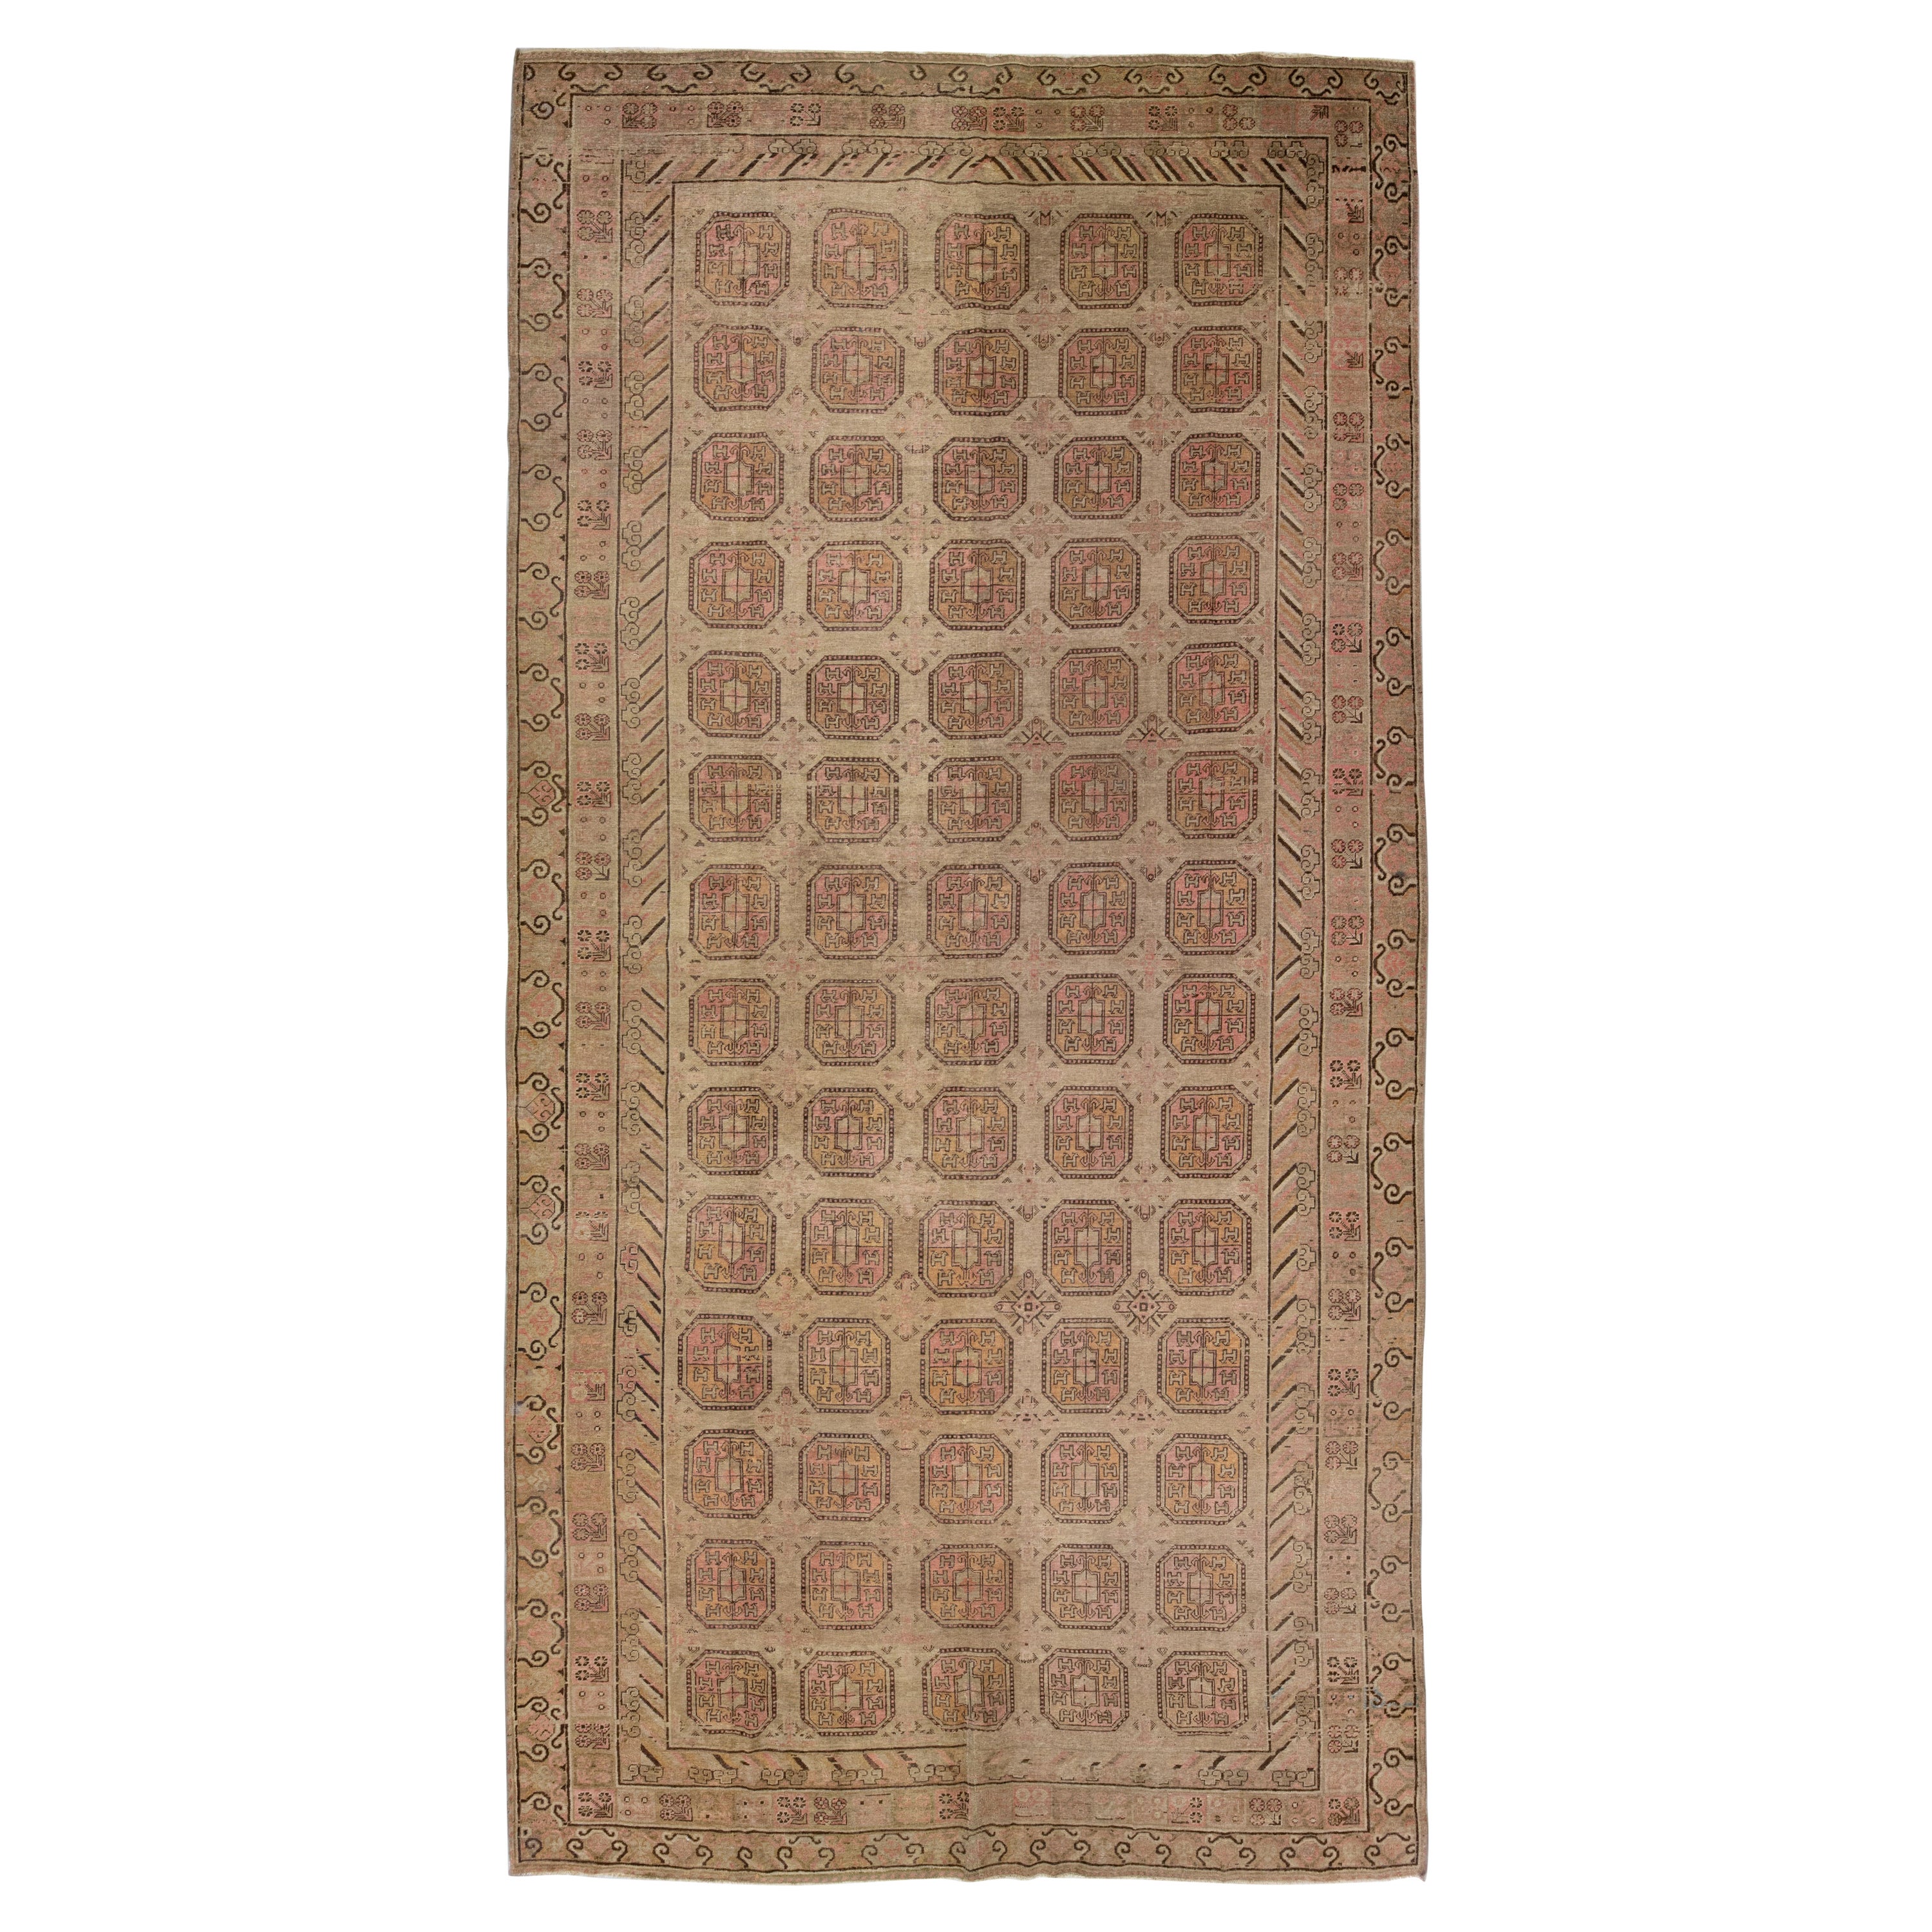 Tapis Khotan en laine marron antique fait à la main avec motif géométrique, années 1900